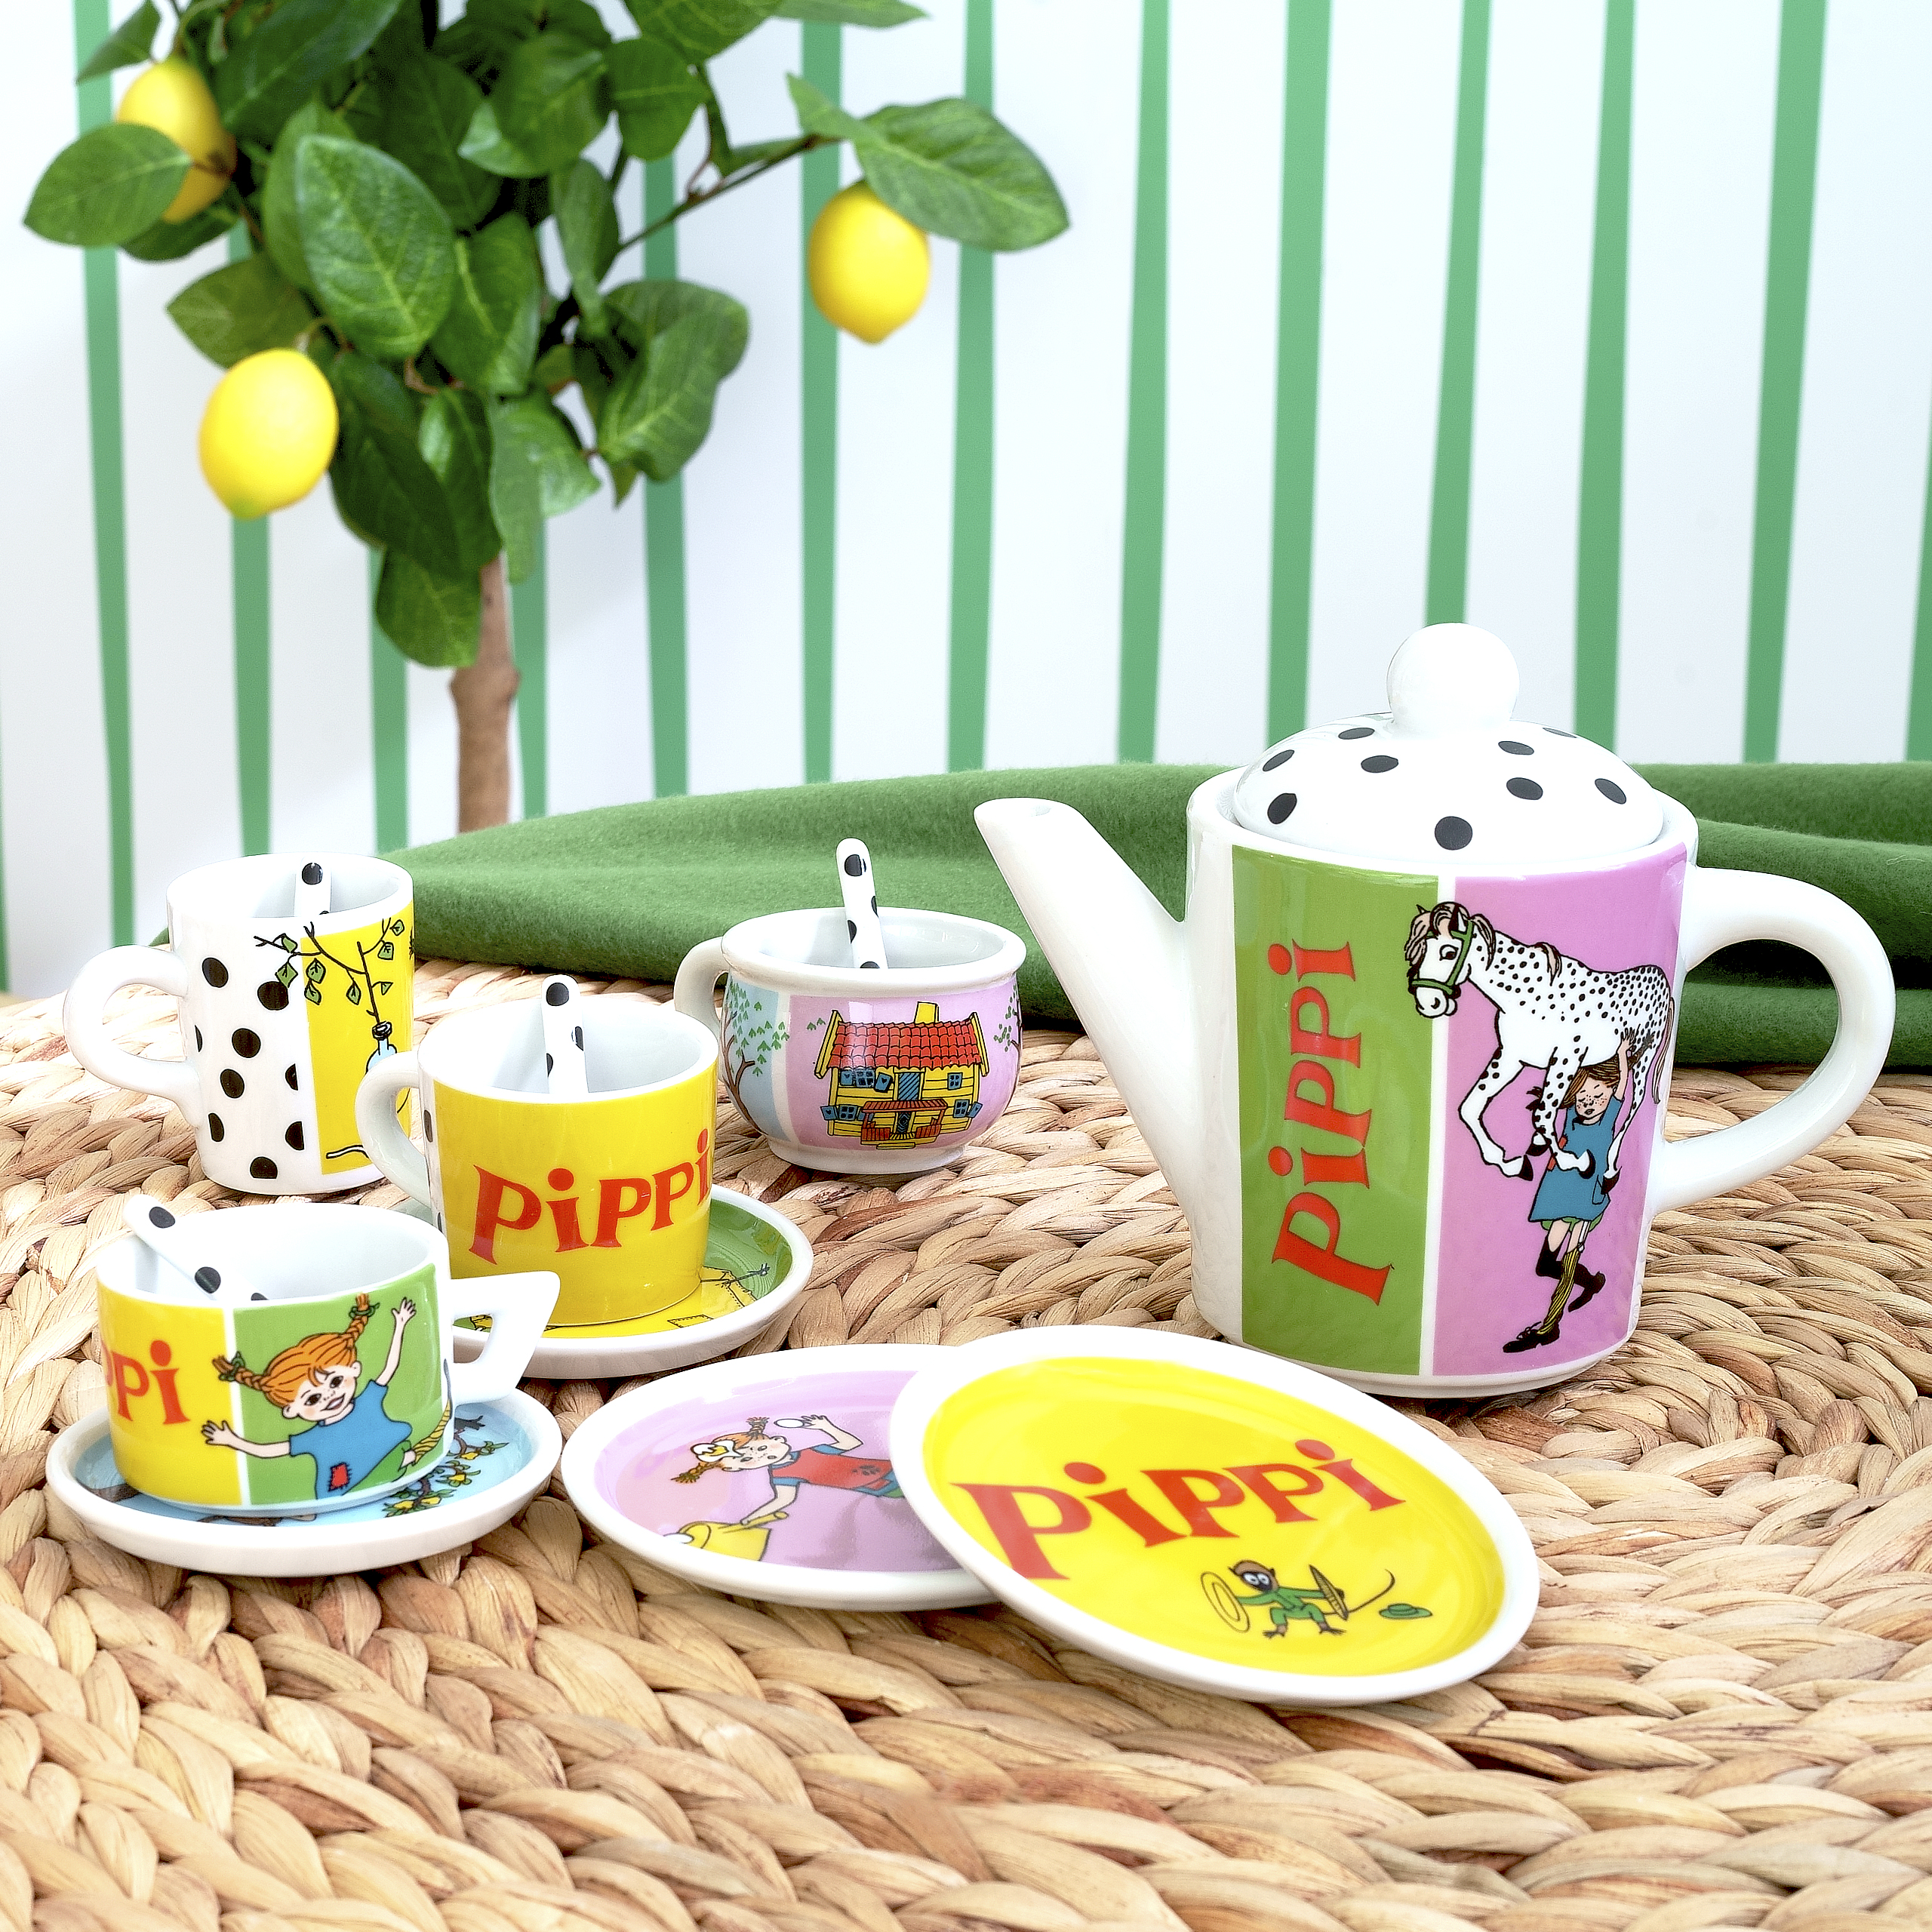 Pippi pippi kids tea set